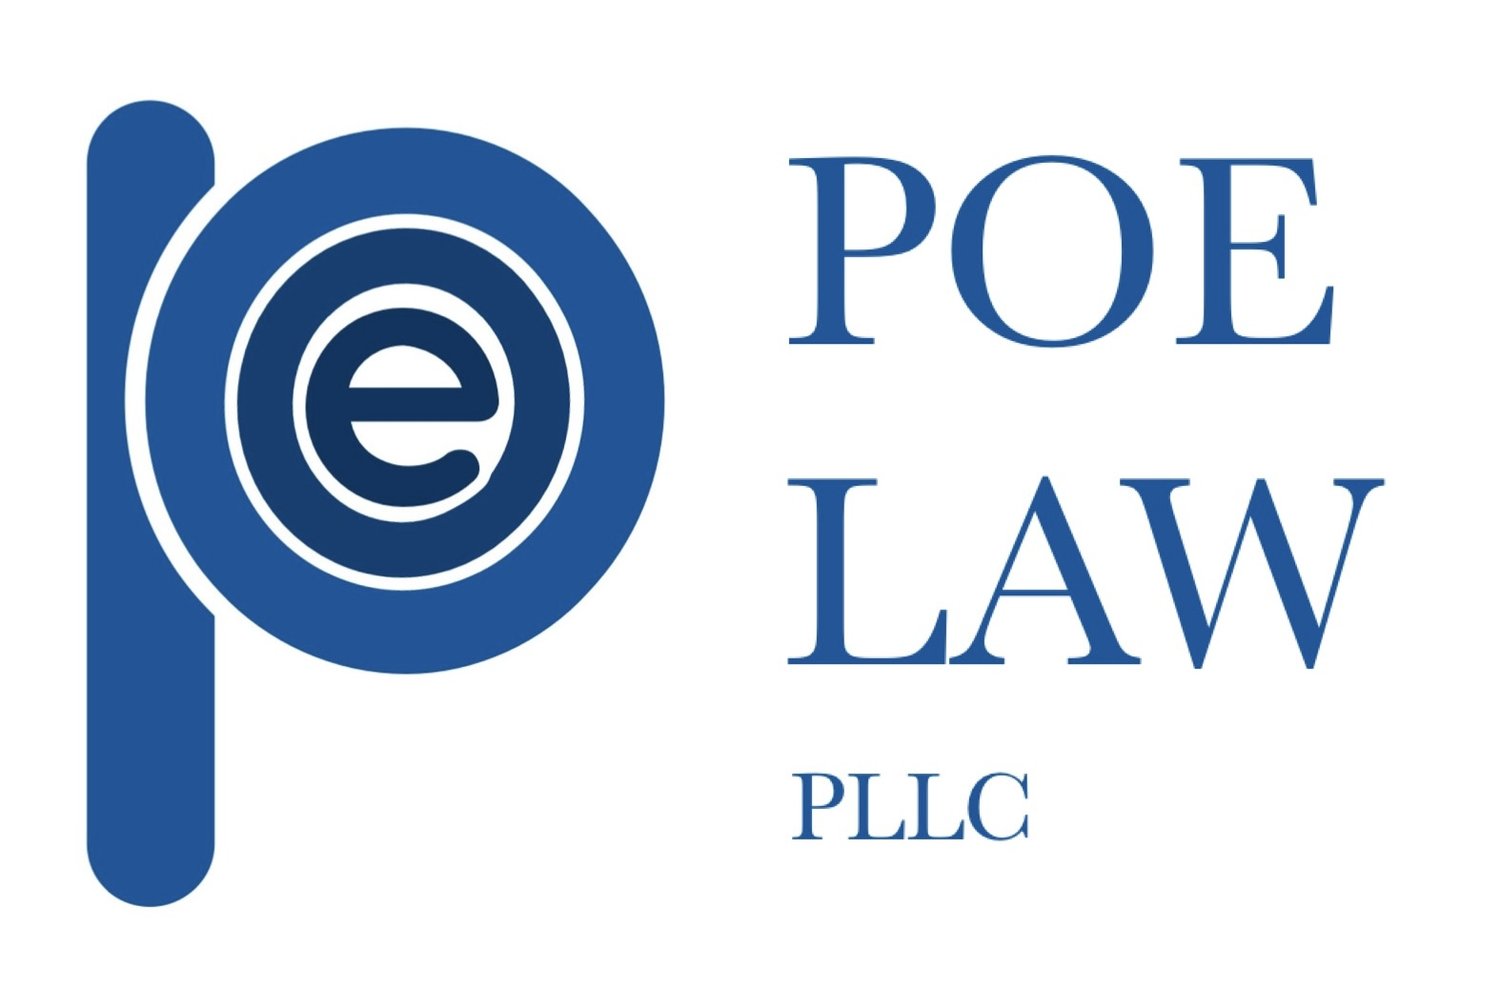 Poe Law PLLC